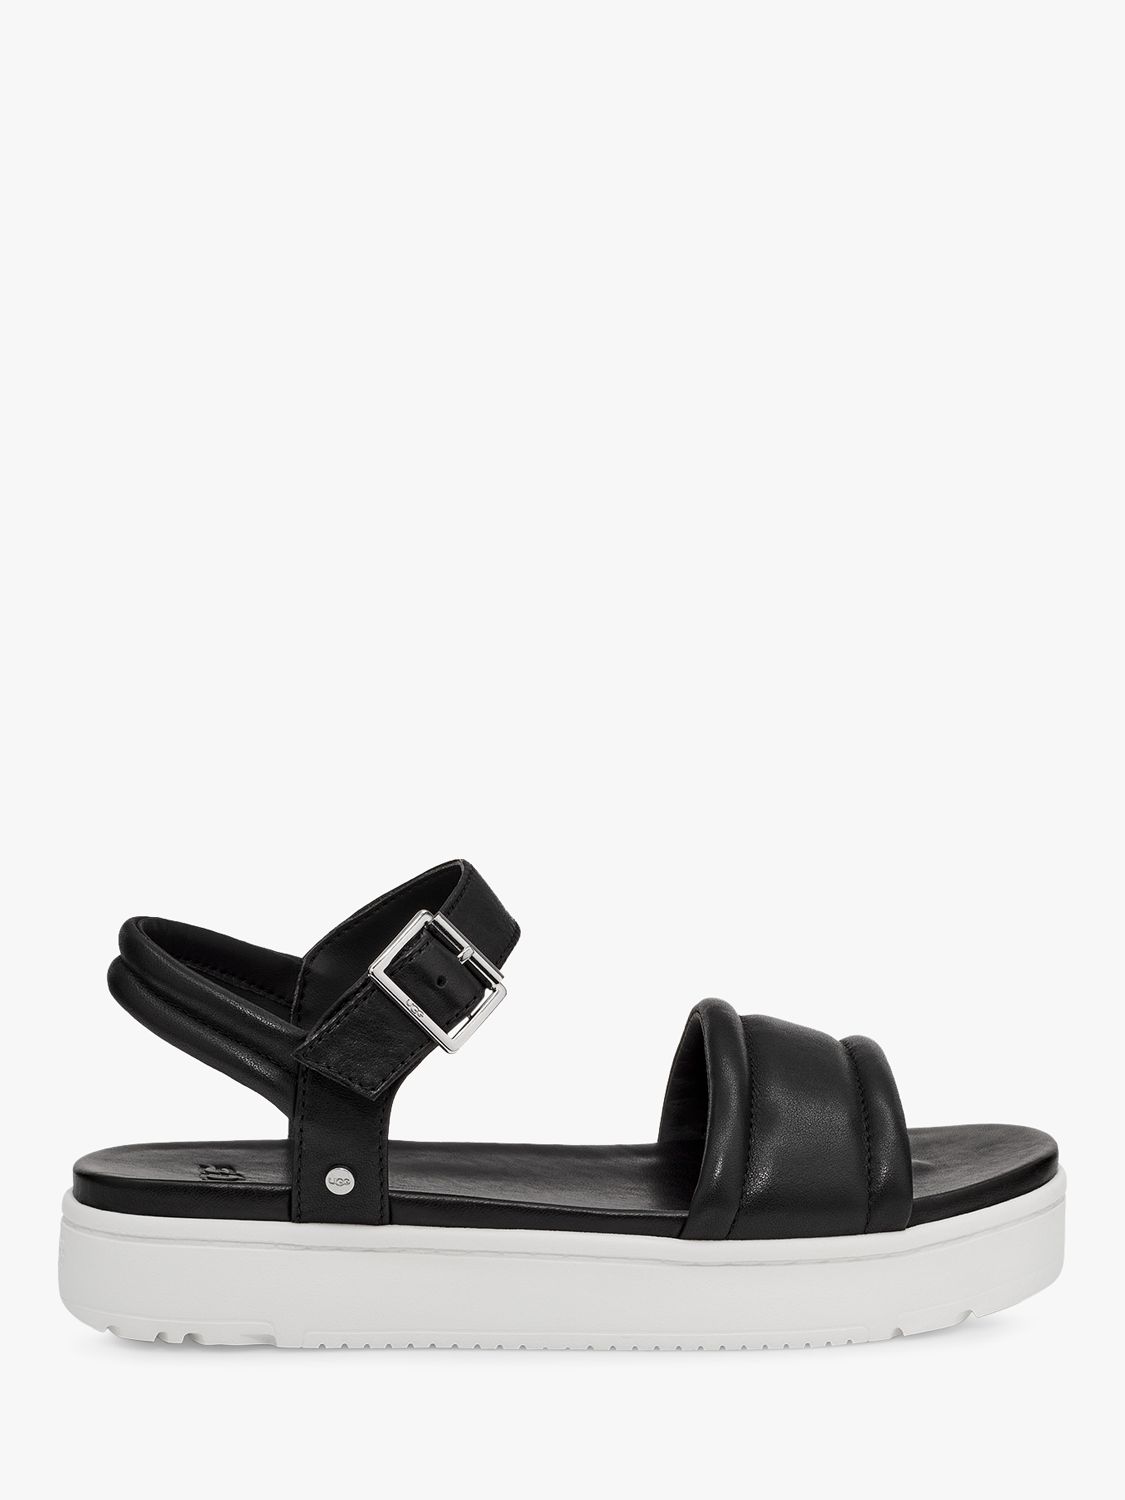 UGG Zayne Ankle Strap Platform Sandals, Black